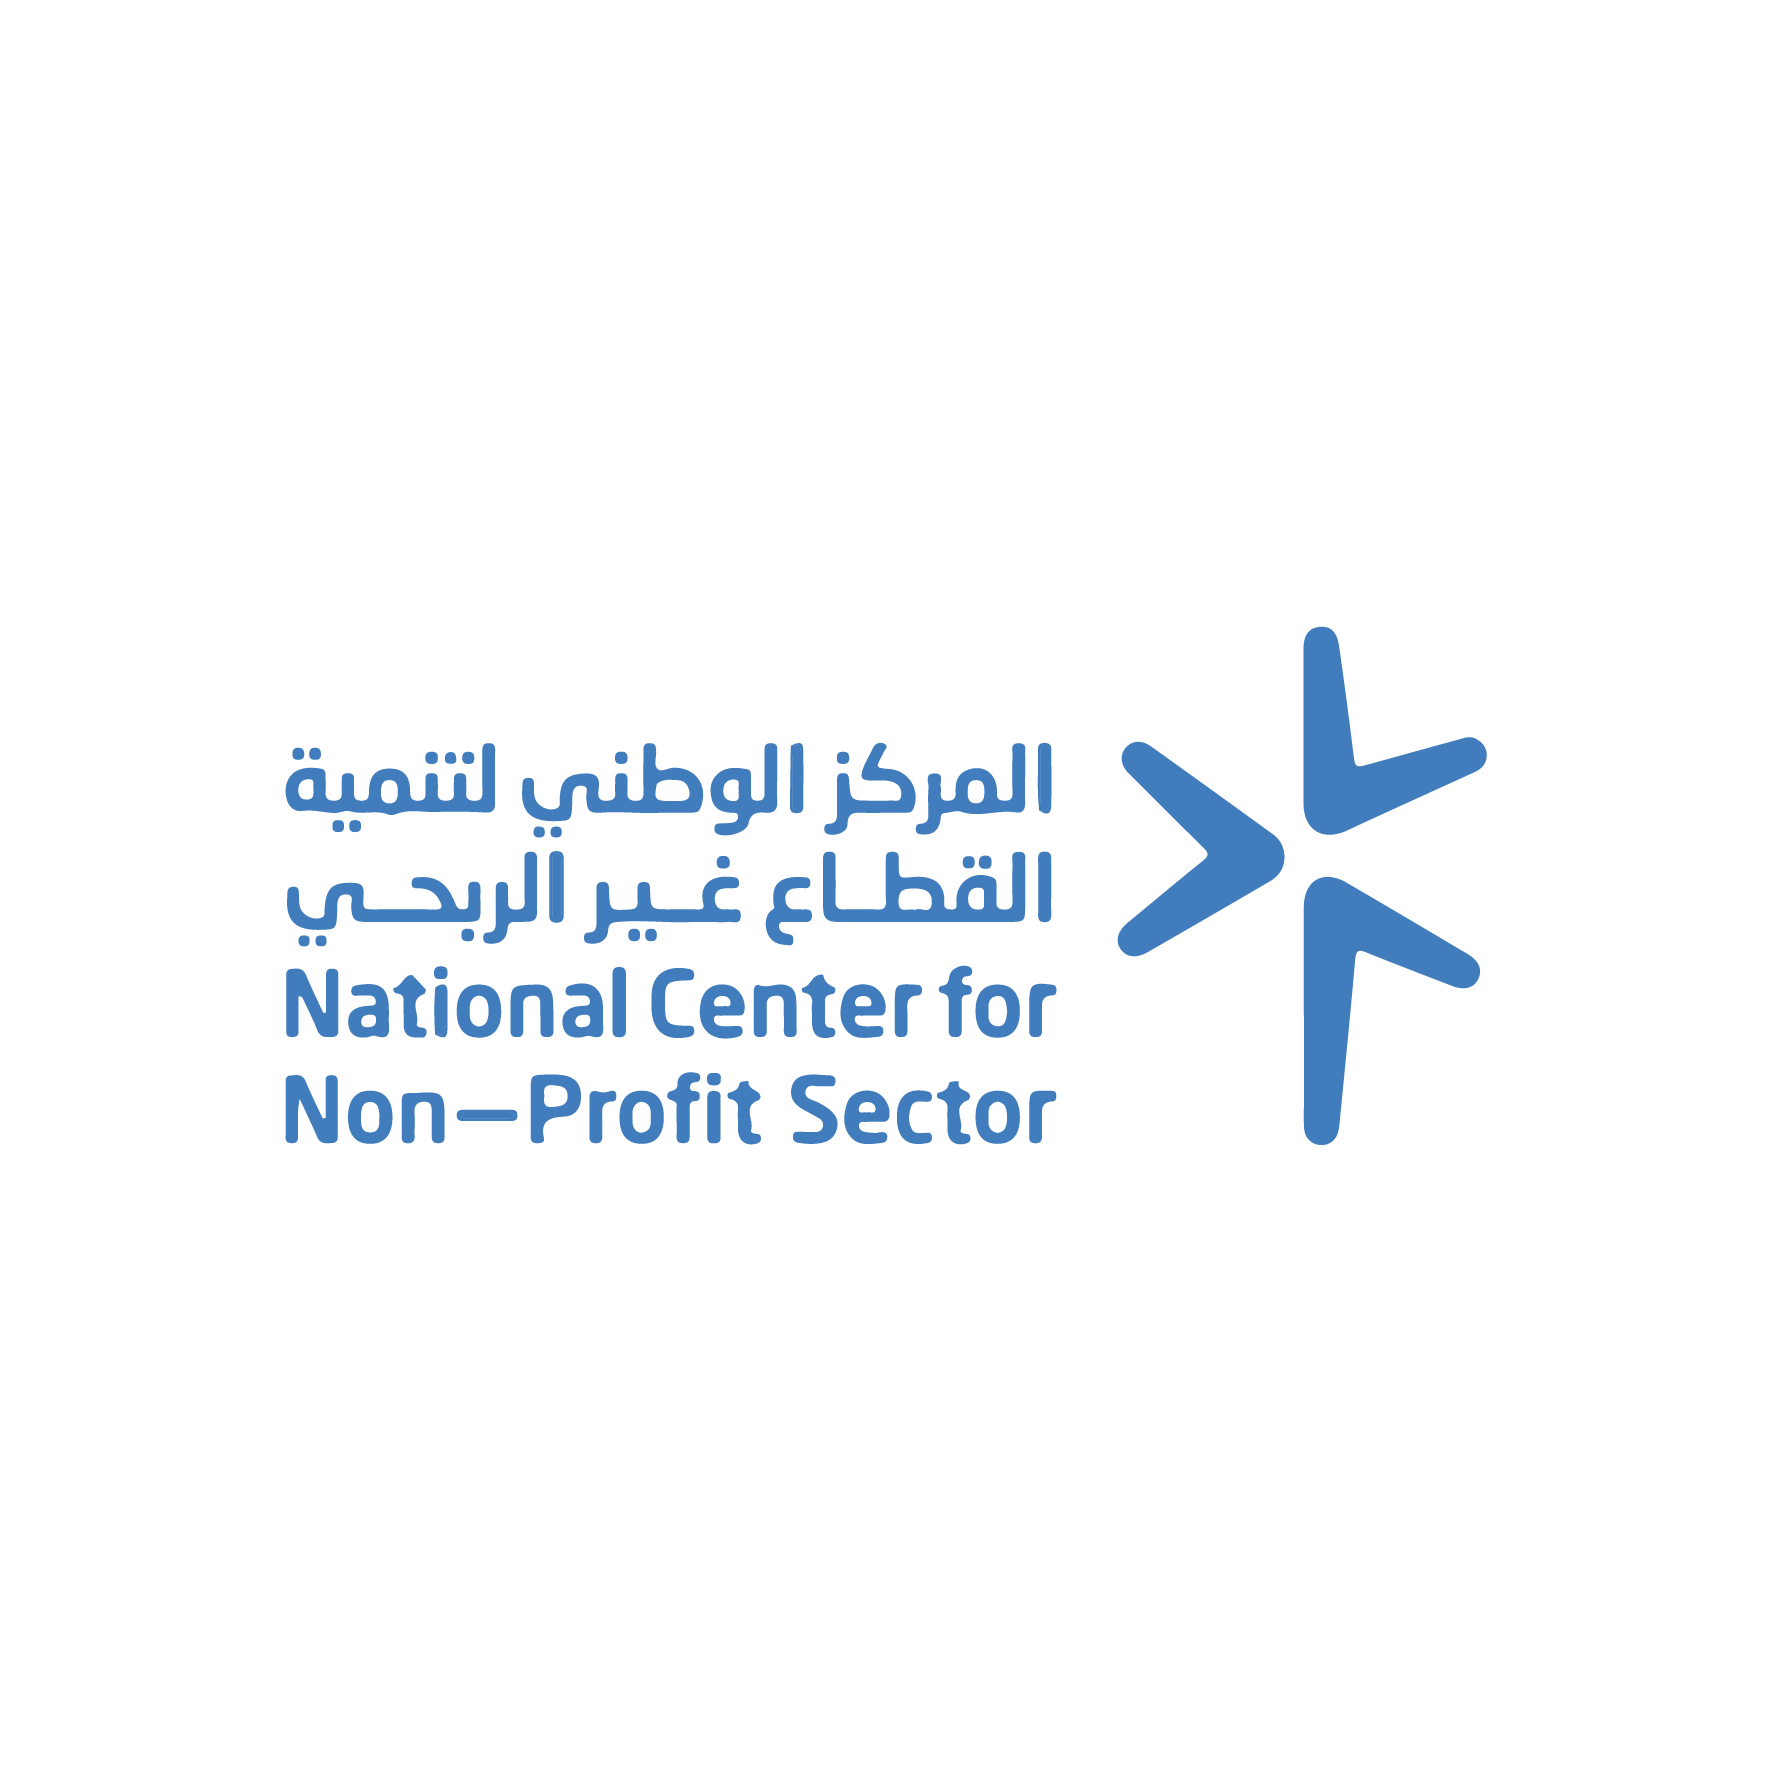 شعار المركز الوطني لتنمية القطاع الغير ربحي